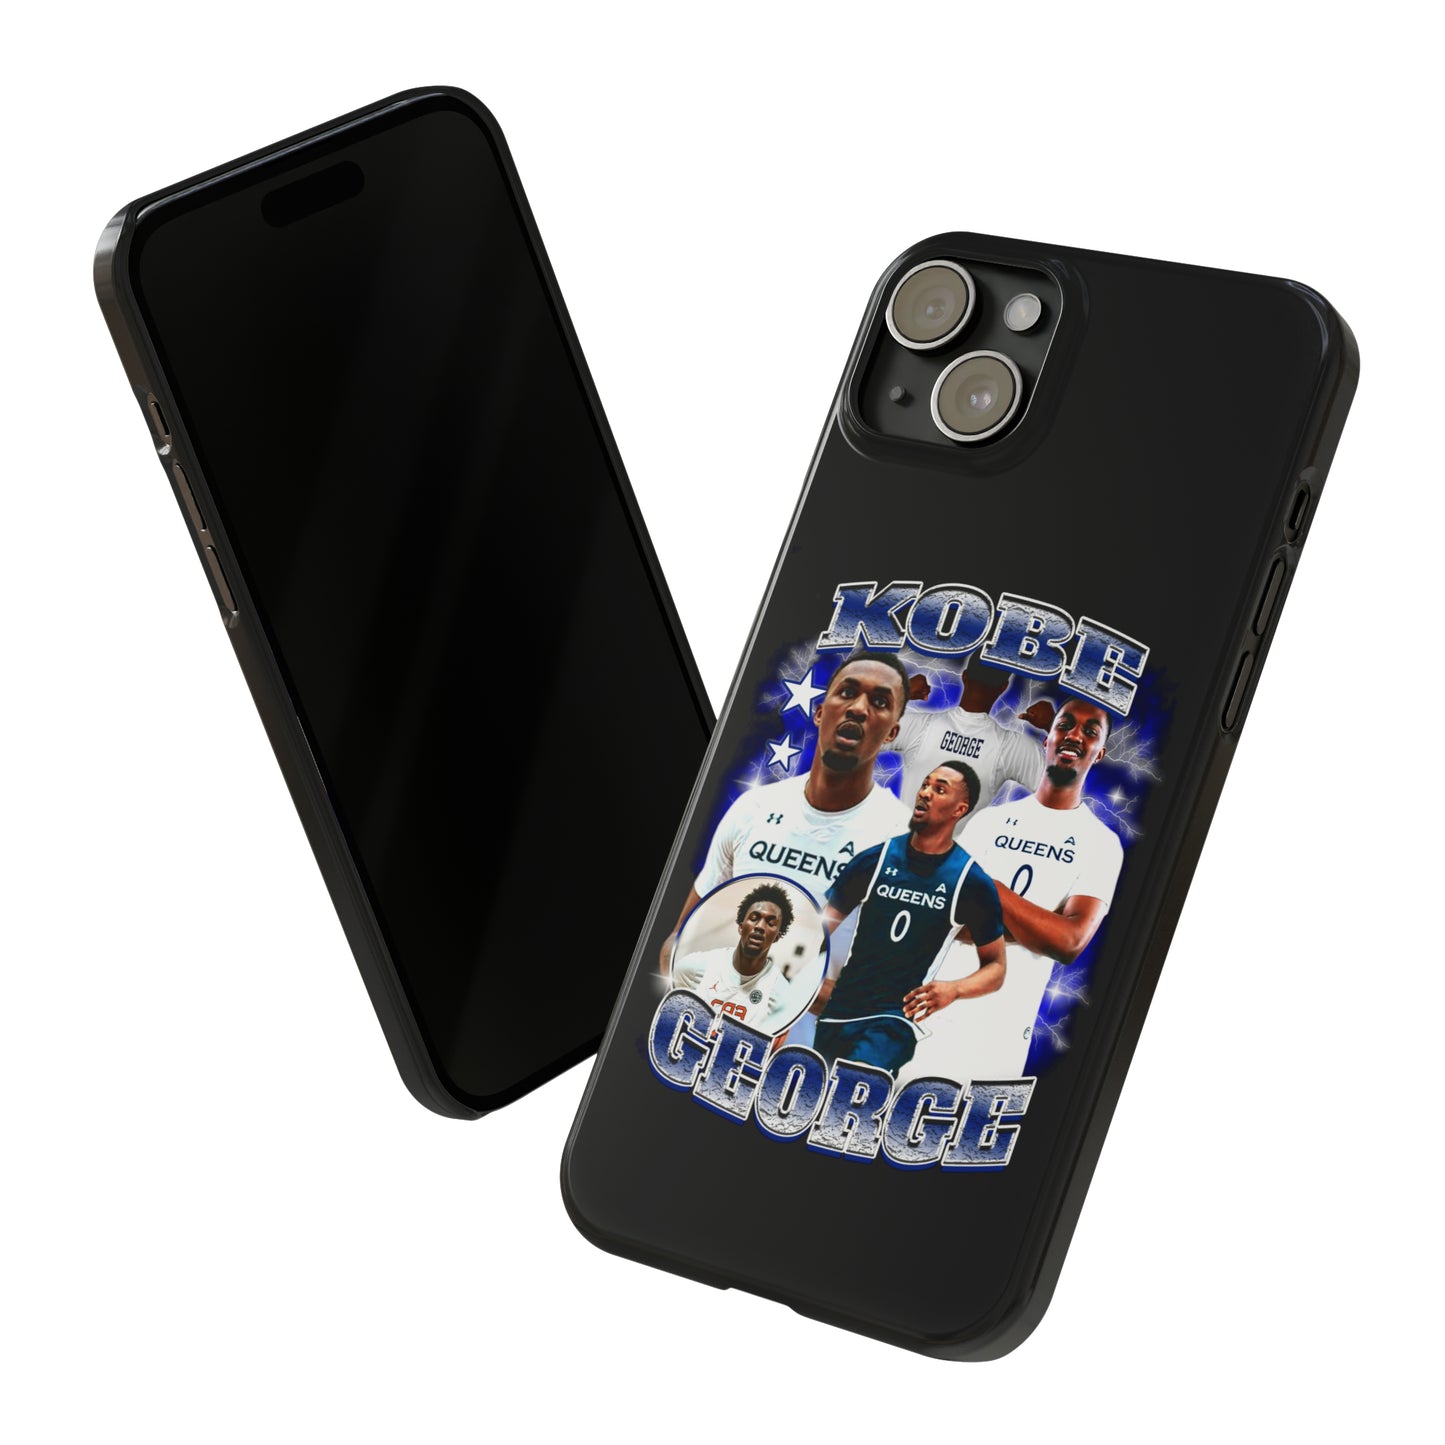 Kobe George Slim Phone Cases